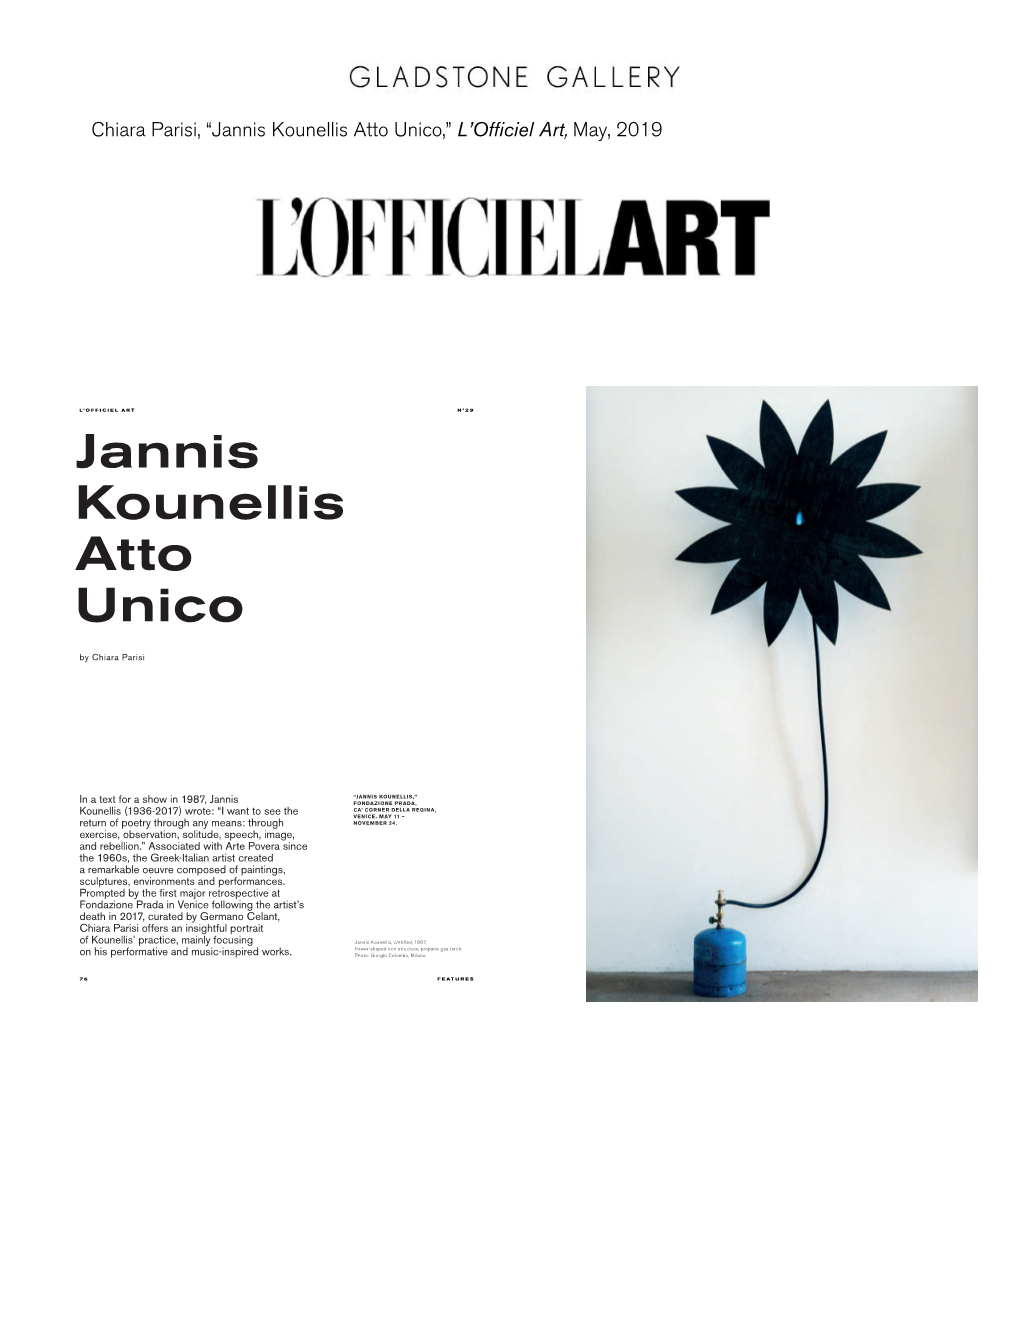 Jannis Kounellis Atto Unico,” L’Officiel Art, May, 2019